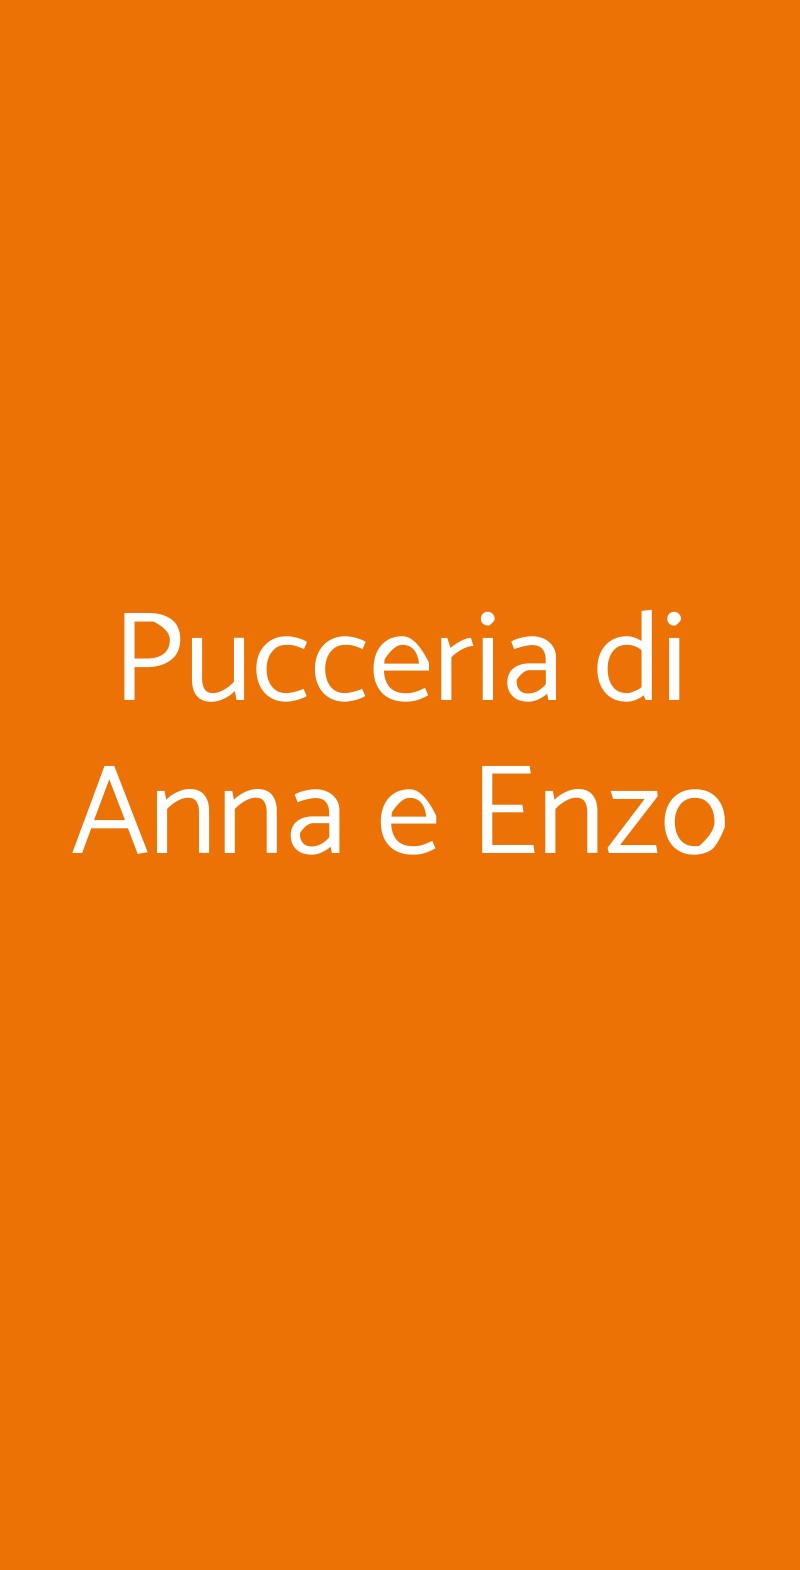 Pucceria di Anna e Enzo La Spezia menù 1 pagina